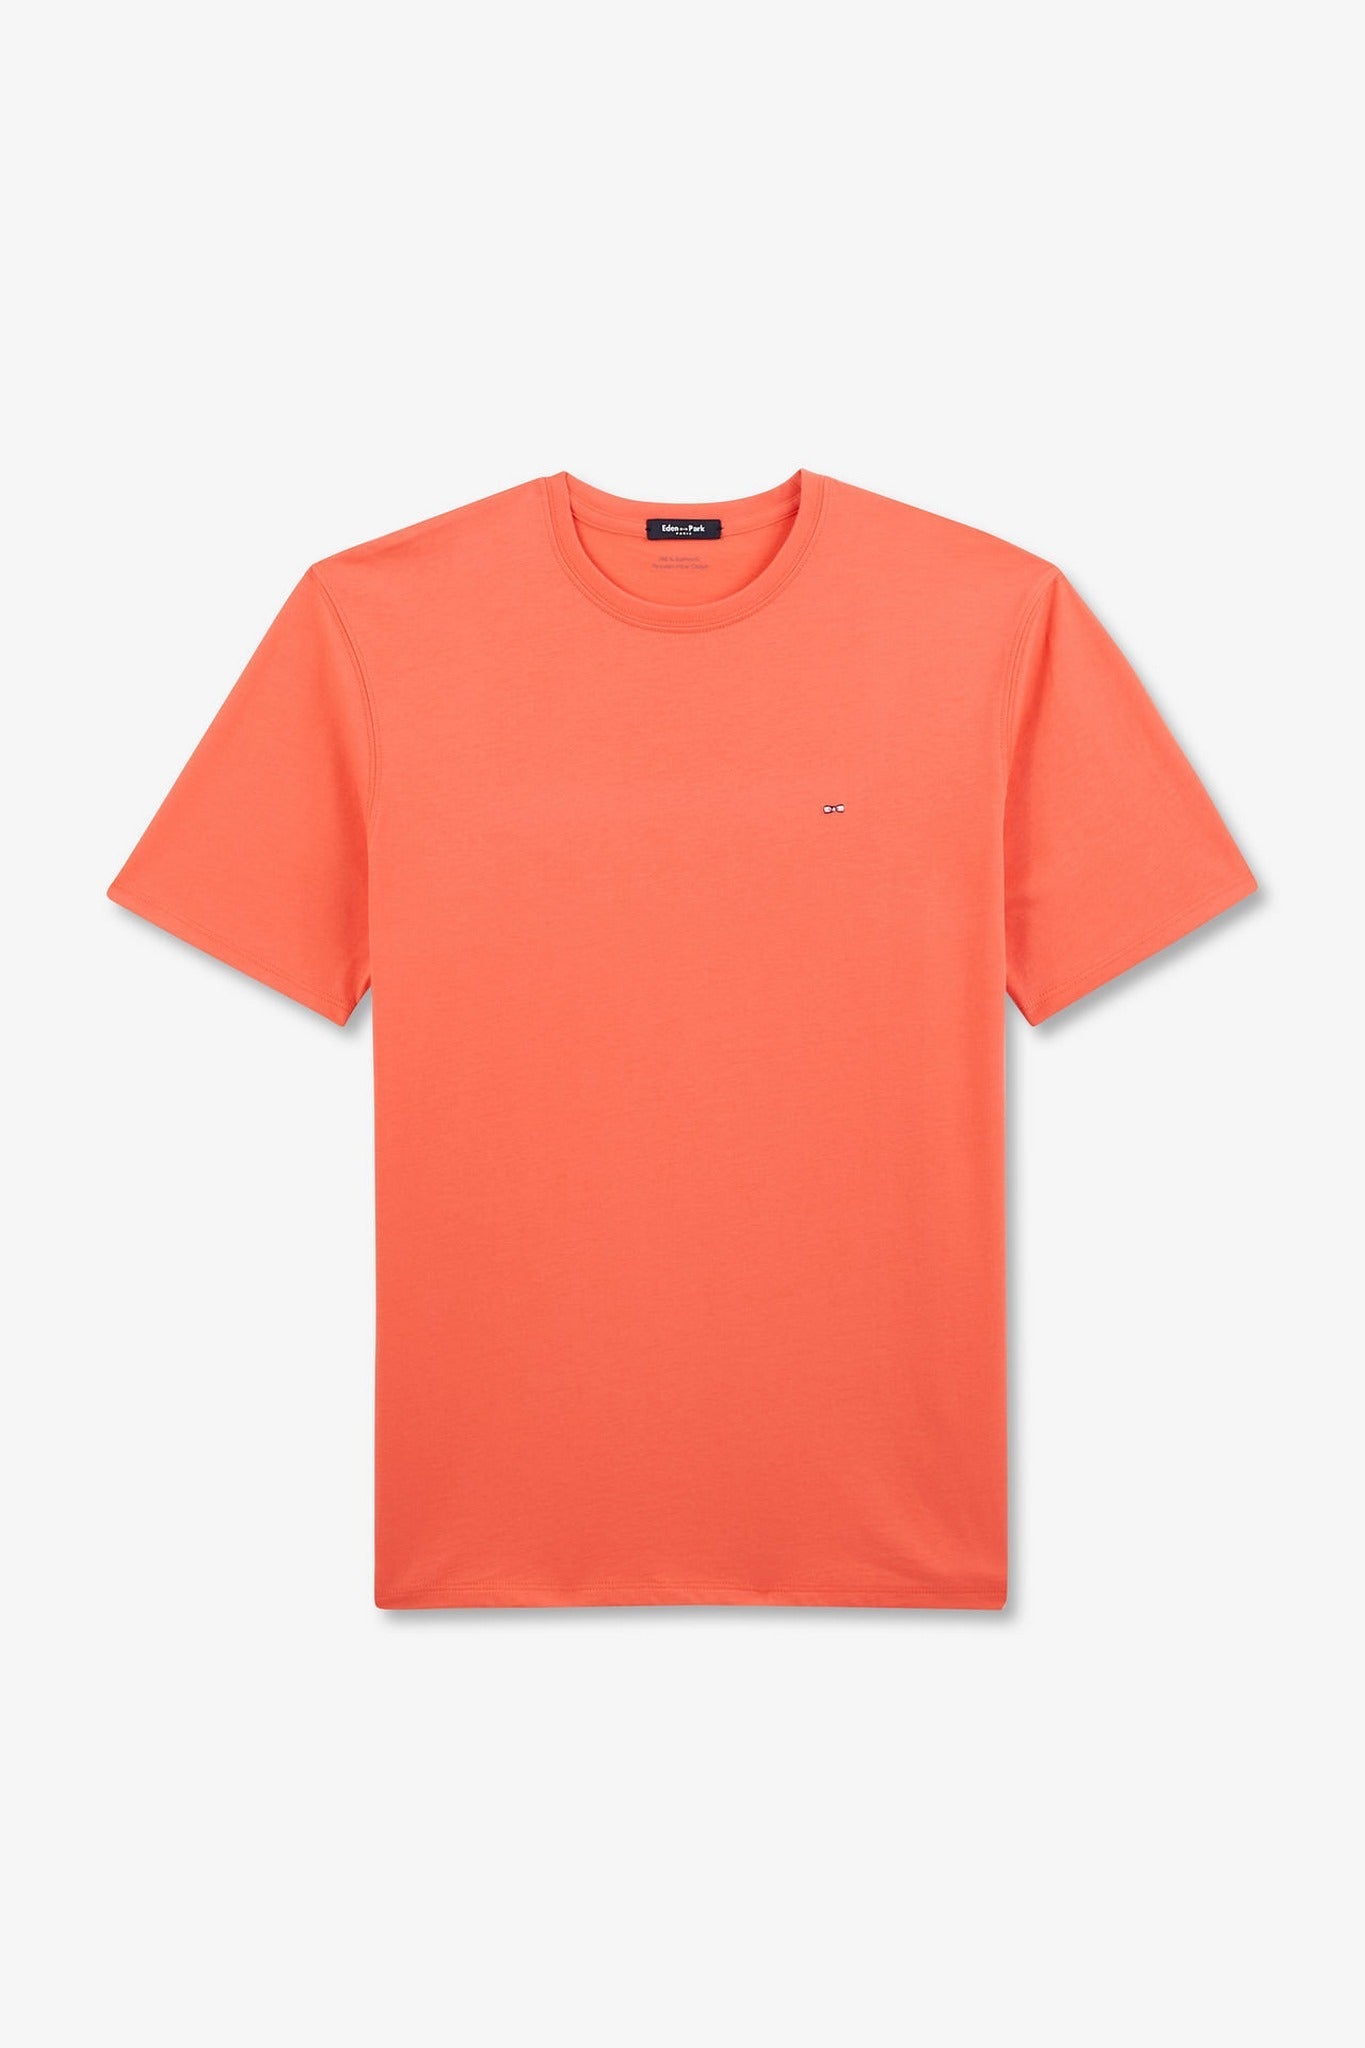 T-shirt rose saumon à manches courtes - Image 2